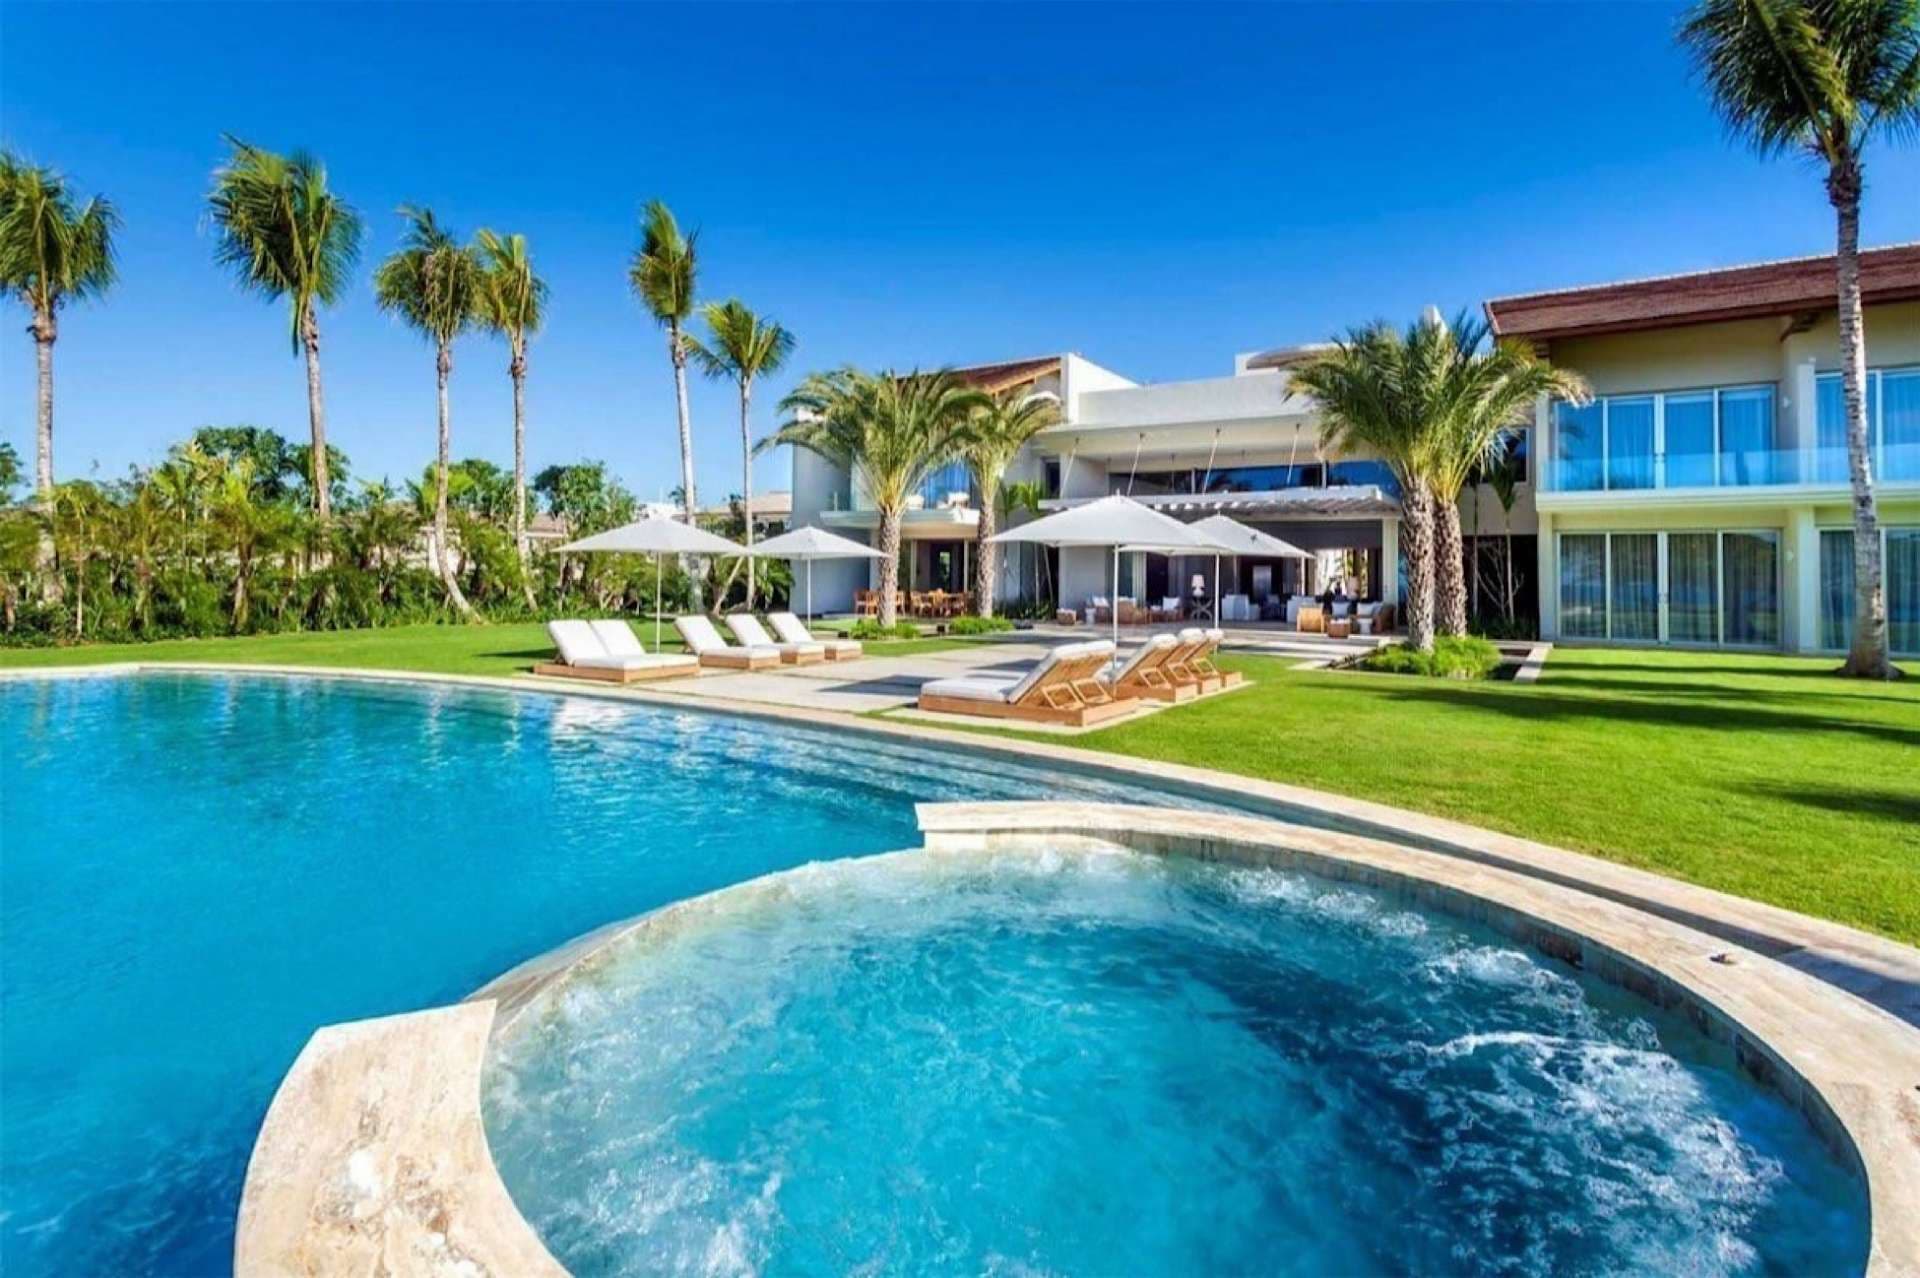 6 Bedroom Villa For Sale Costa Mar 10 Casa De Campo Lp04941 29040e46563f2600.jpeg